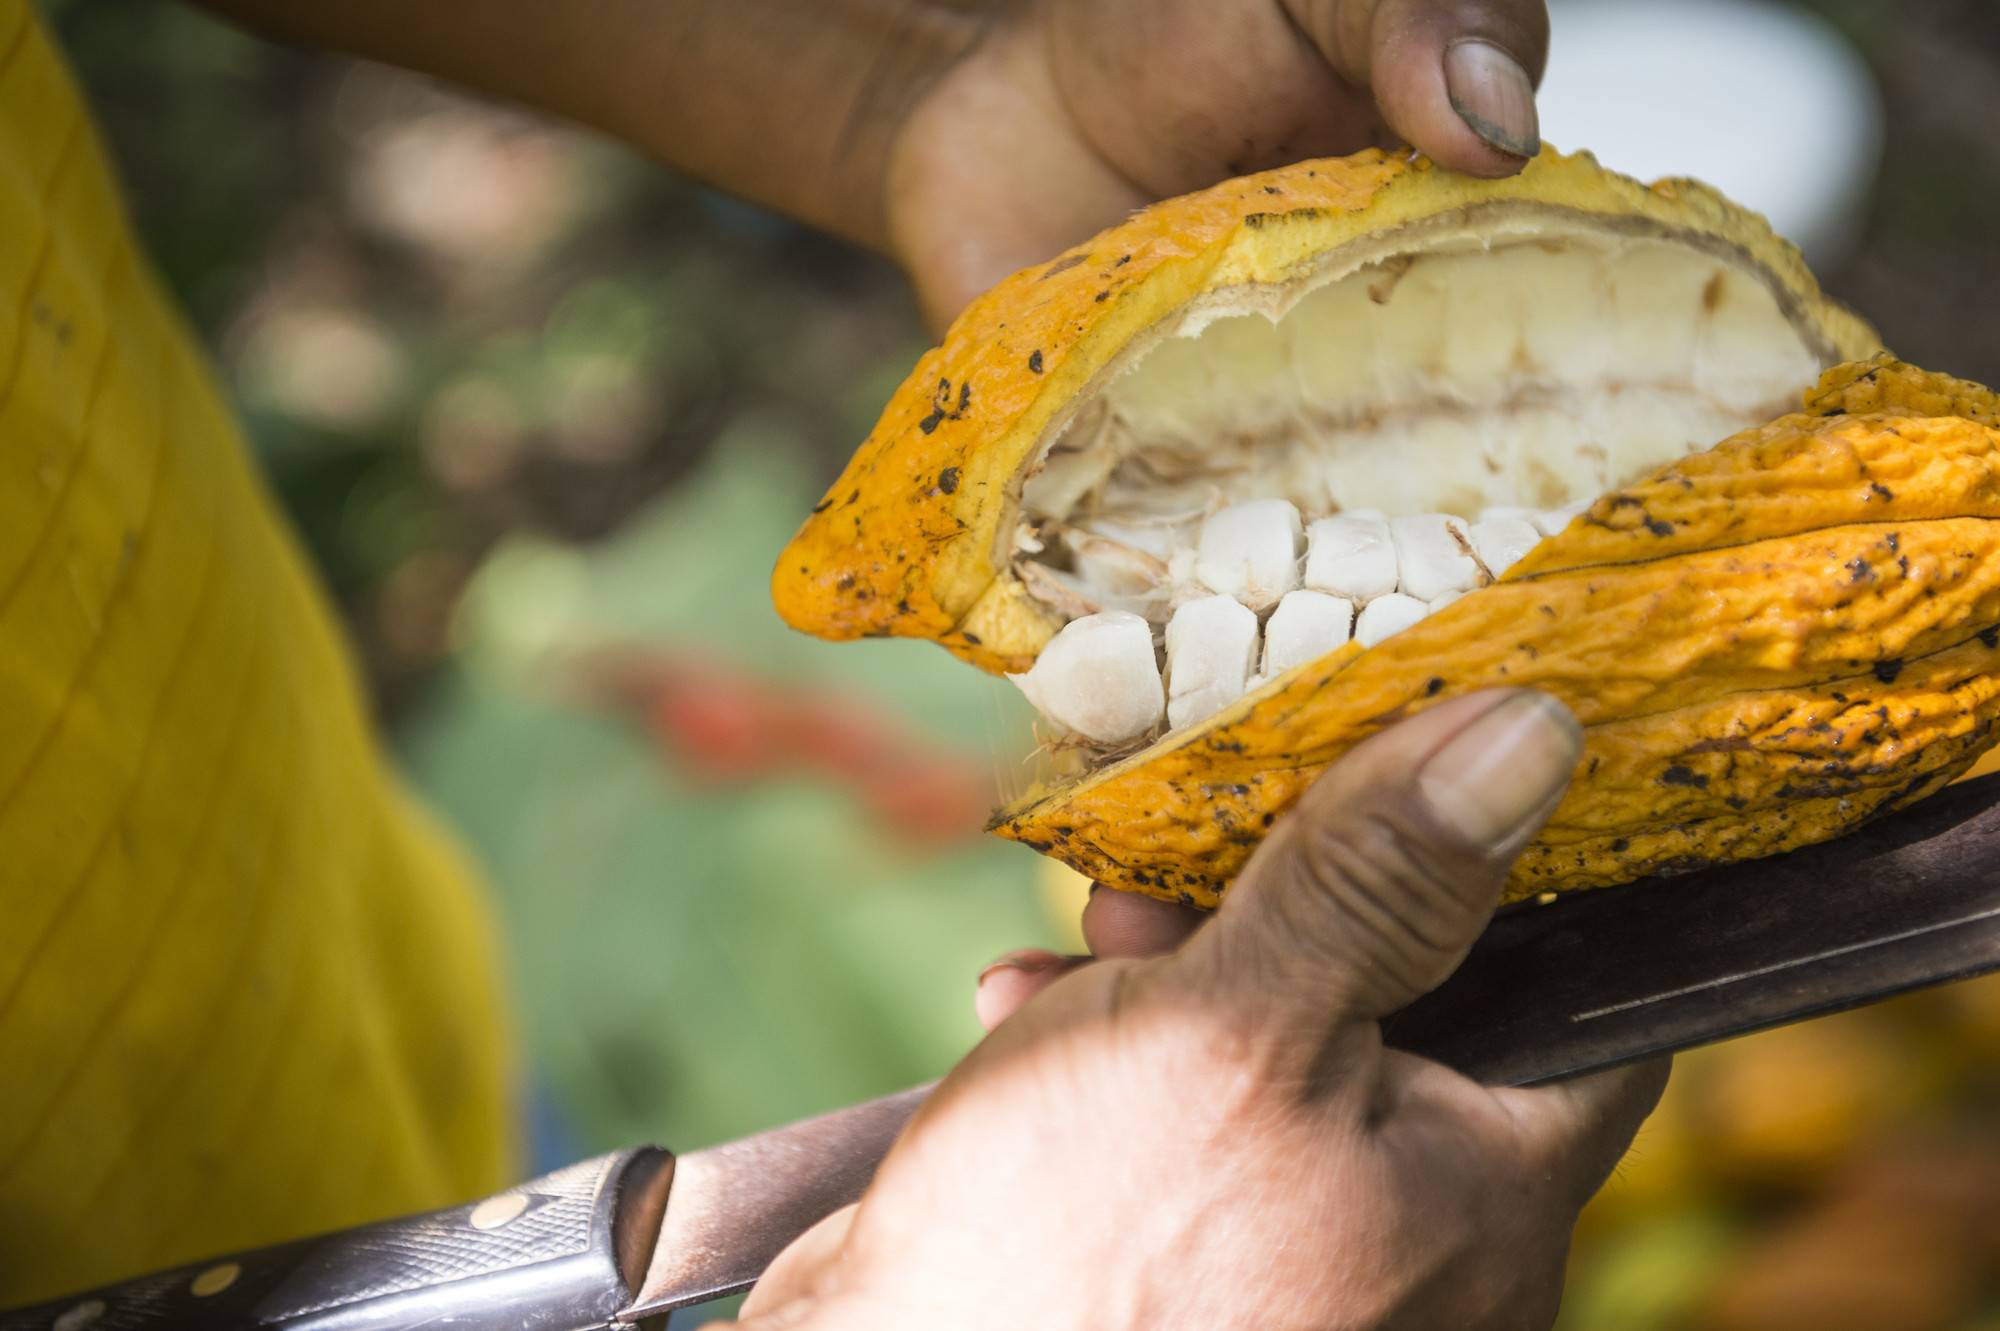 Circular Economy Cocoa: From Bean to Bar